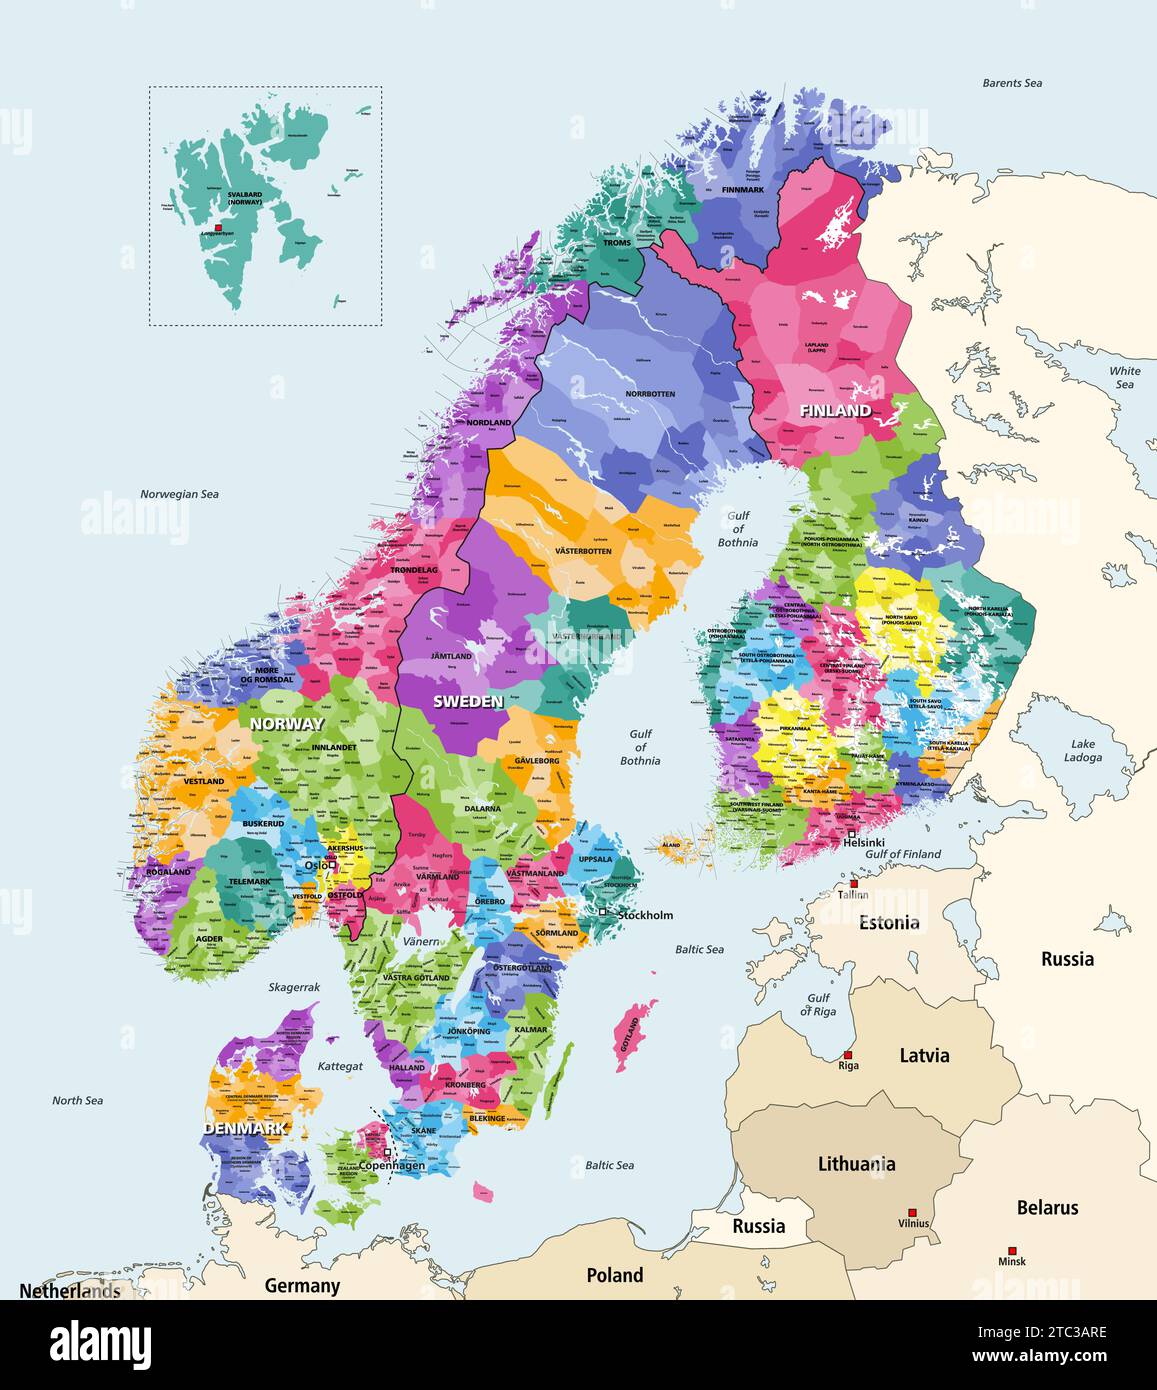 Mappa delle regioni e dei comuni nella regione nordica. Illustrazione vettoriale Illustrazione Vettoriale